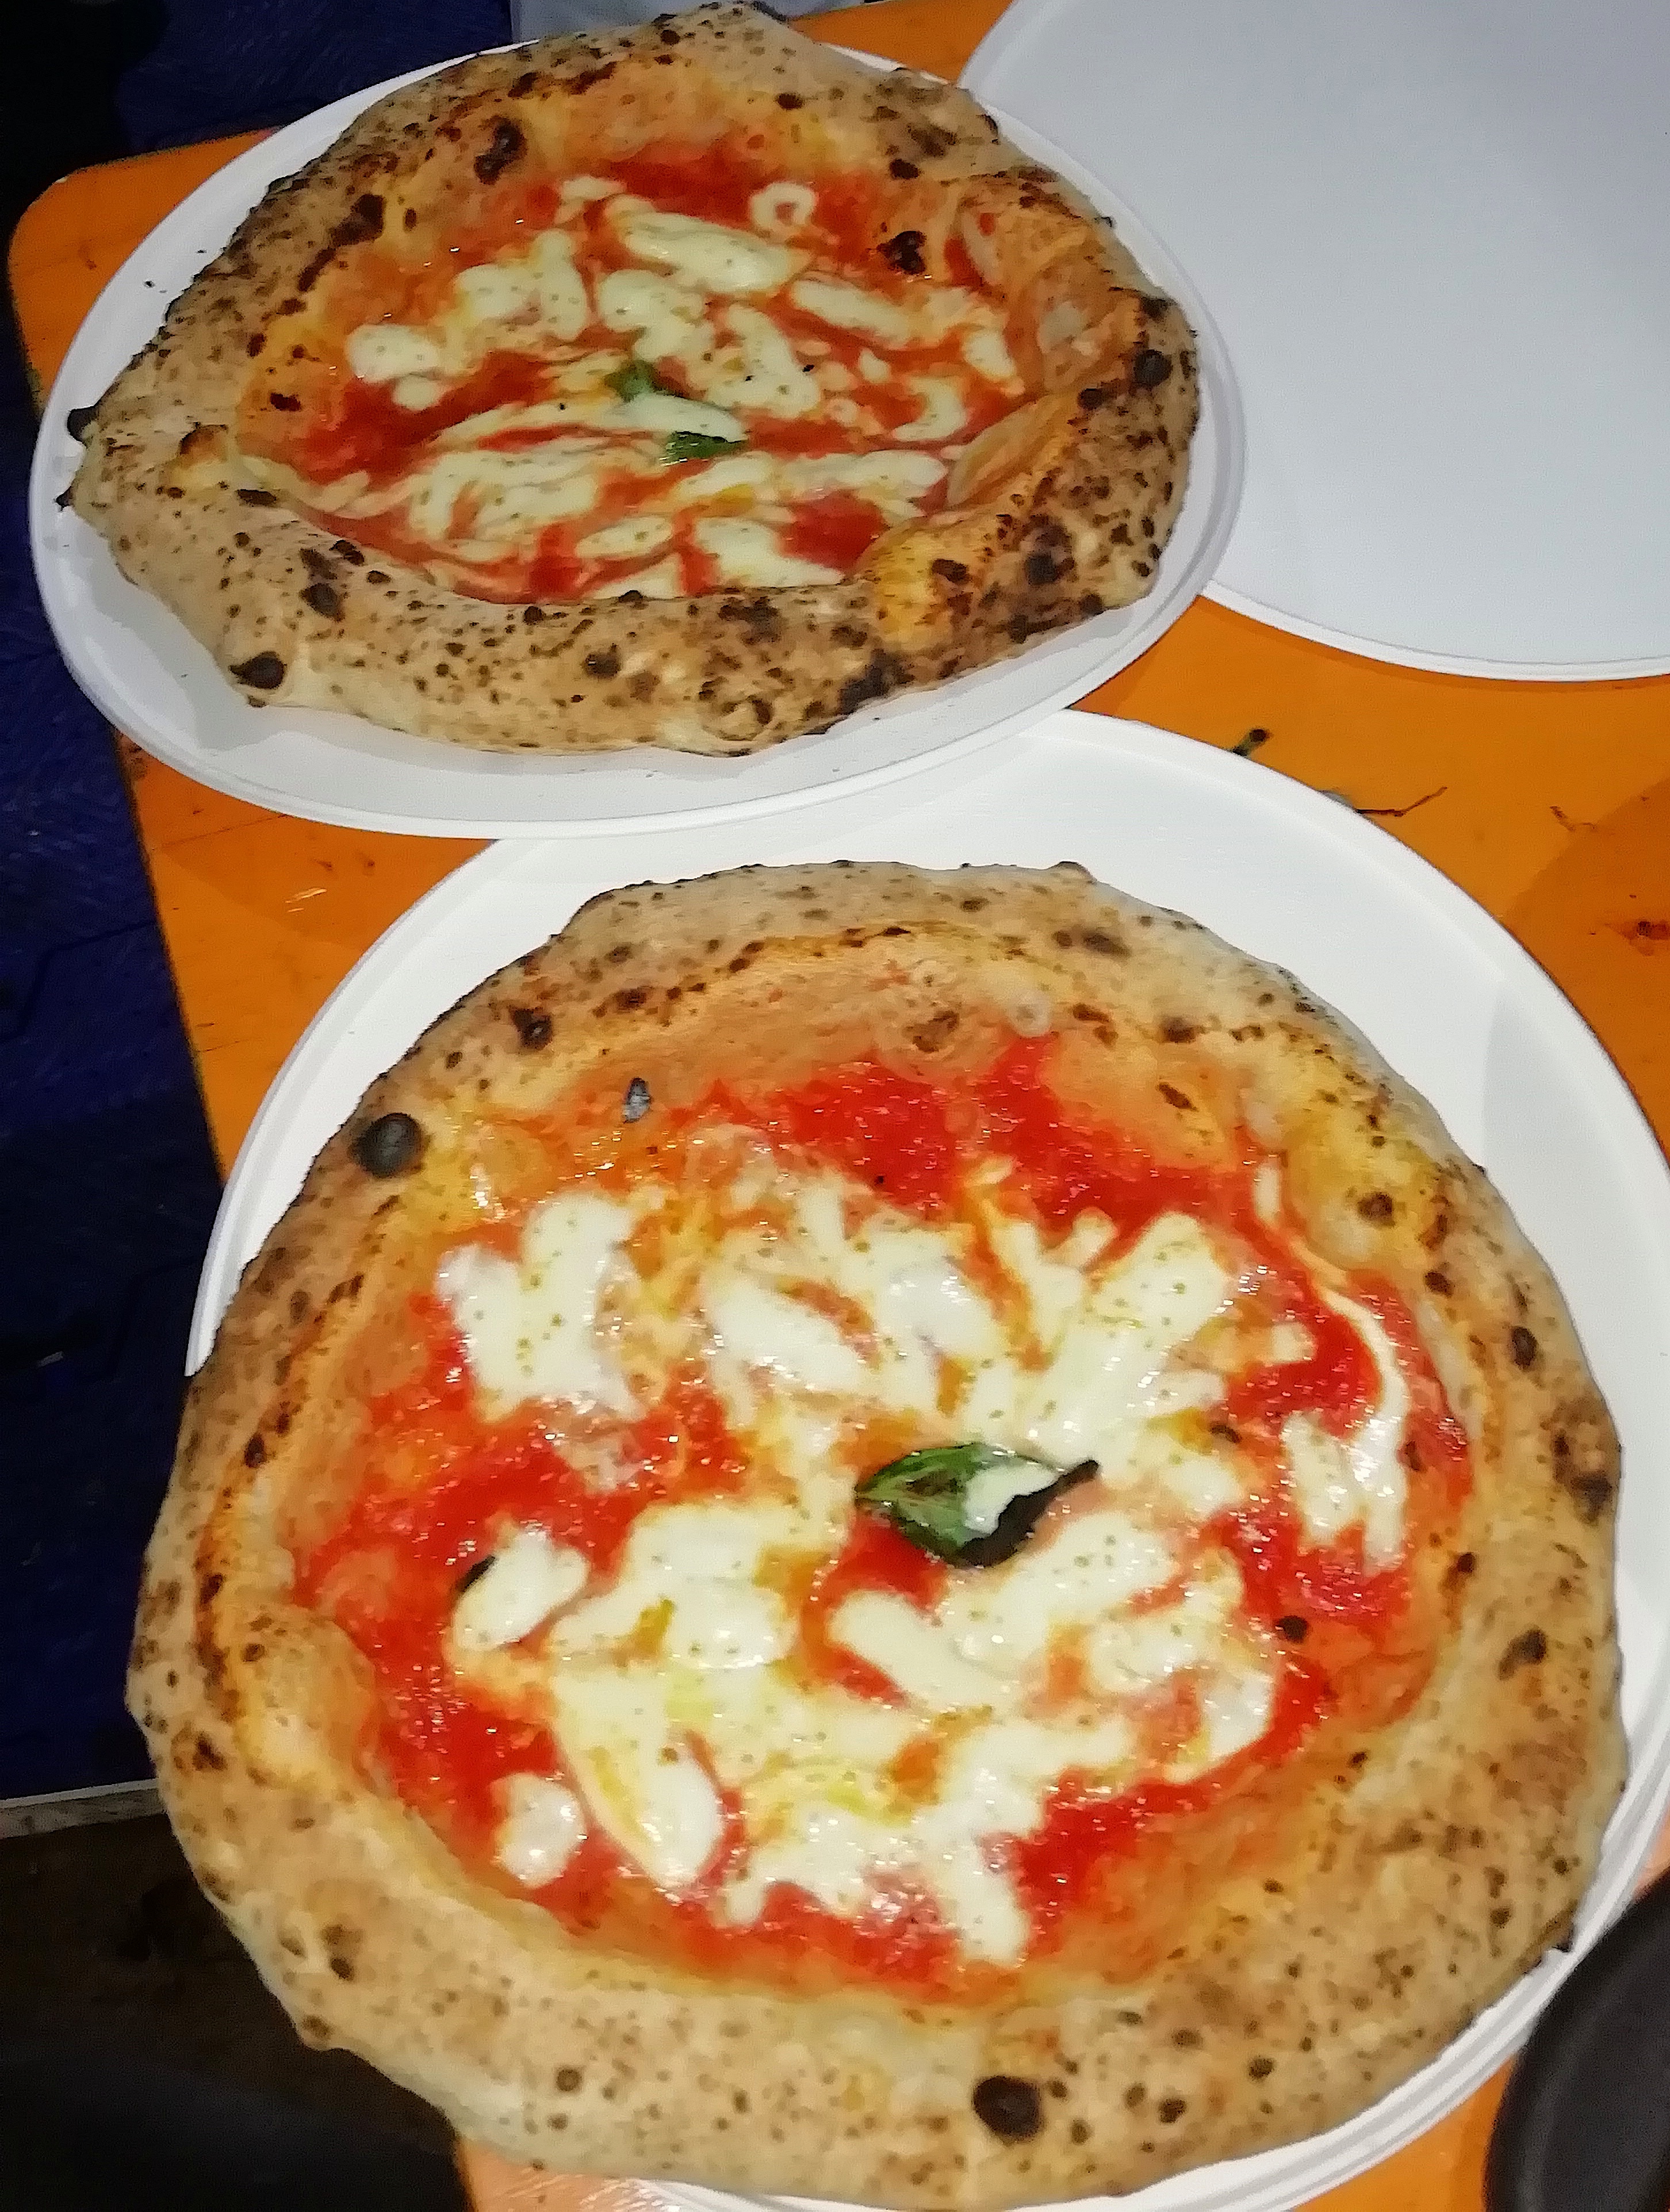 Napoli Pizza Village (Naples, Italy) Our Edible Italy